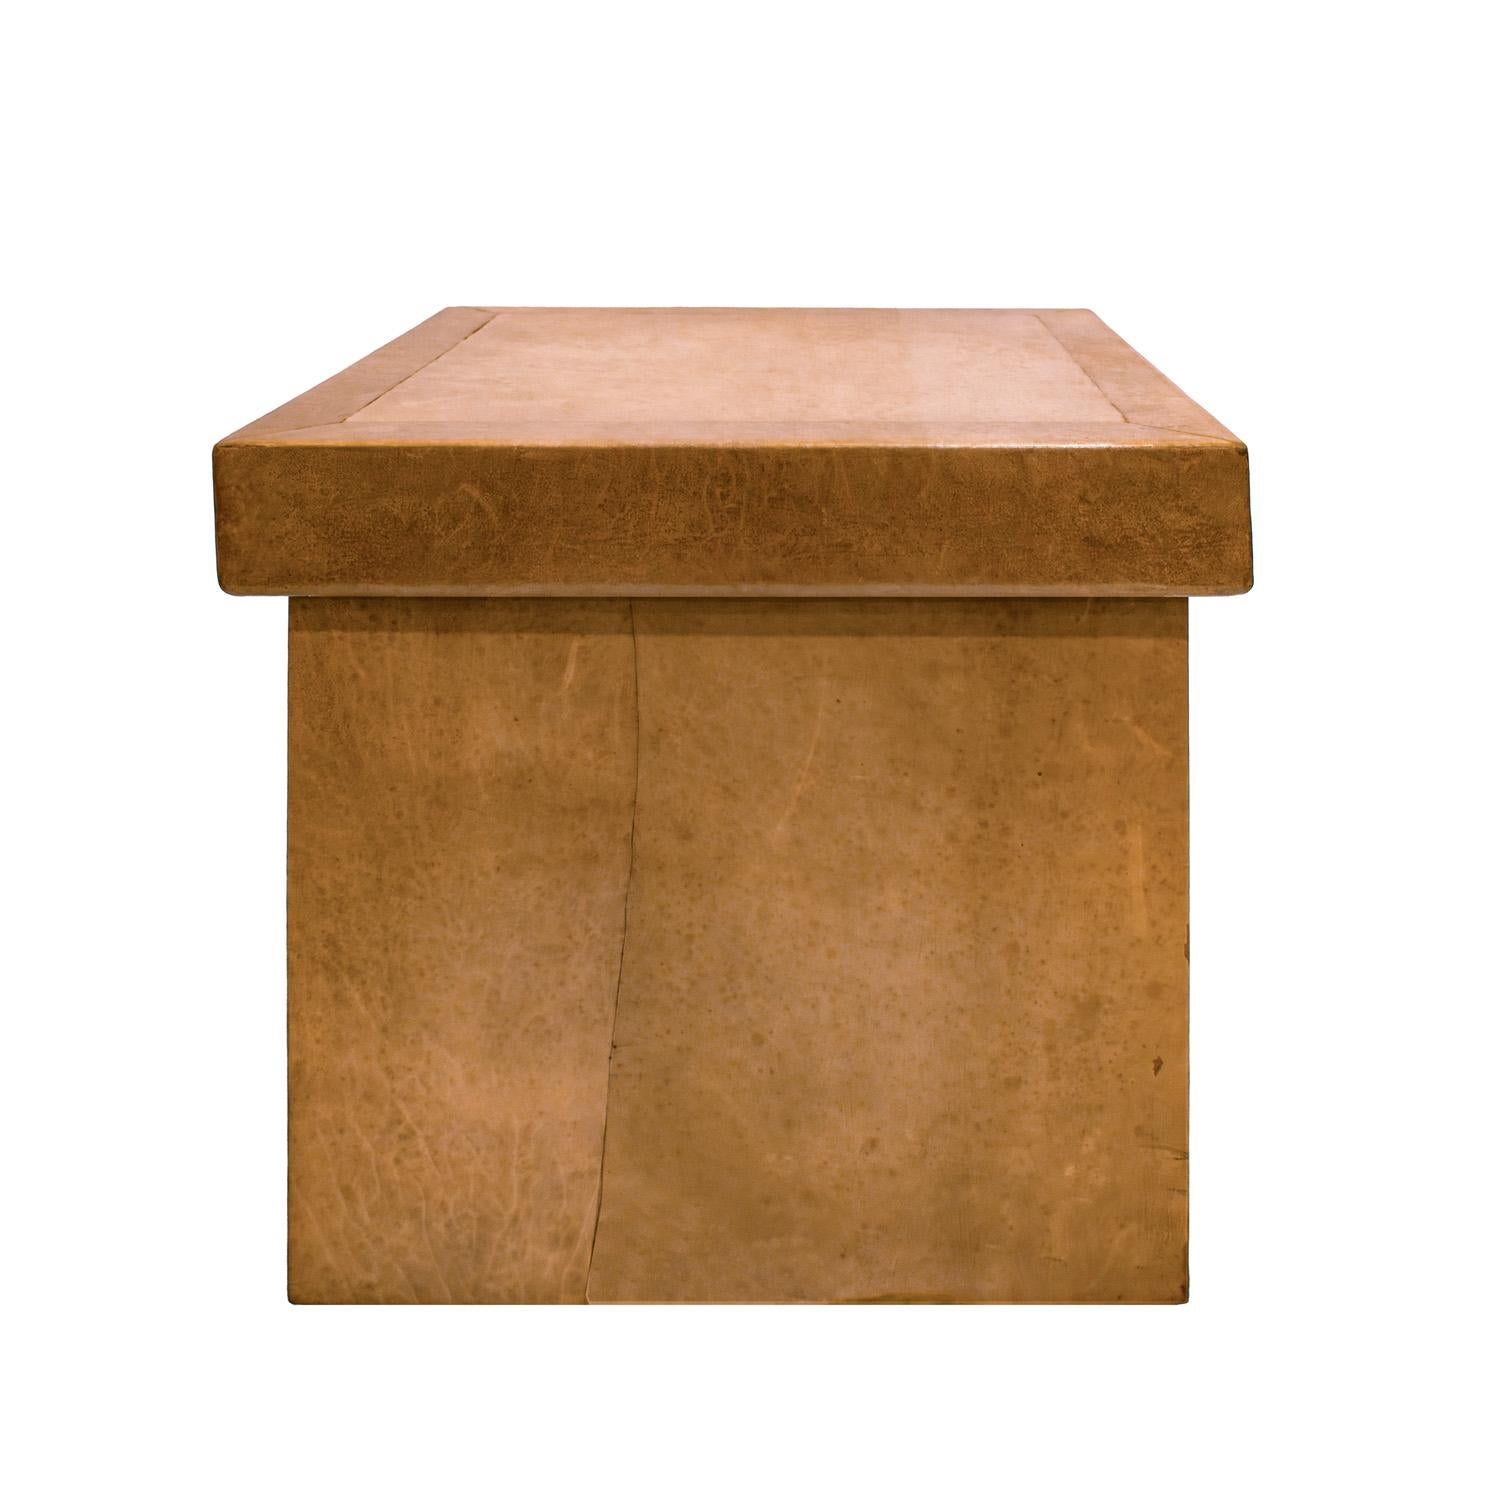 Exceptionnelle table-boîte en cuir brun à l'extérieur et à l'intérieur par Karl Springer, américain 1976-78.  Le fond est recouvert de soie moirée. Il s'agit d'un prototype.  Le travail de la peau, comme pour toutes les pièces de Springer, est